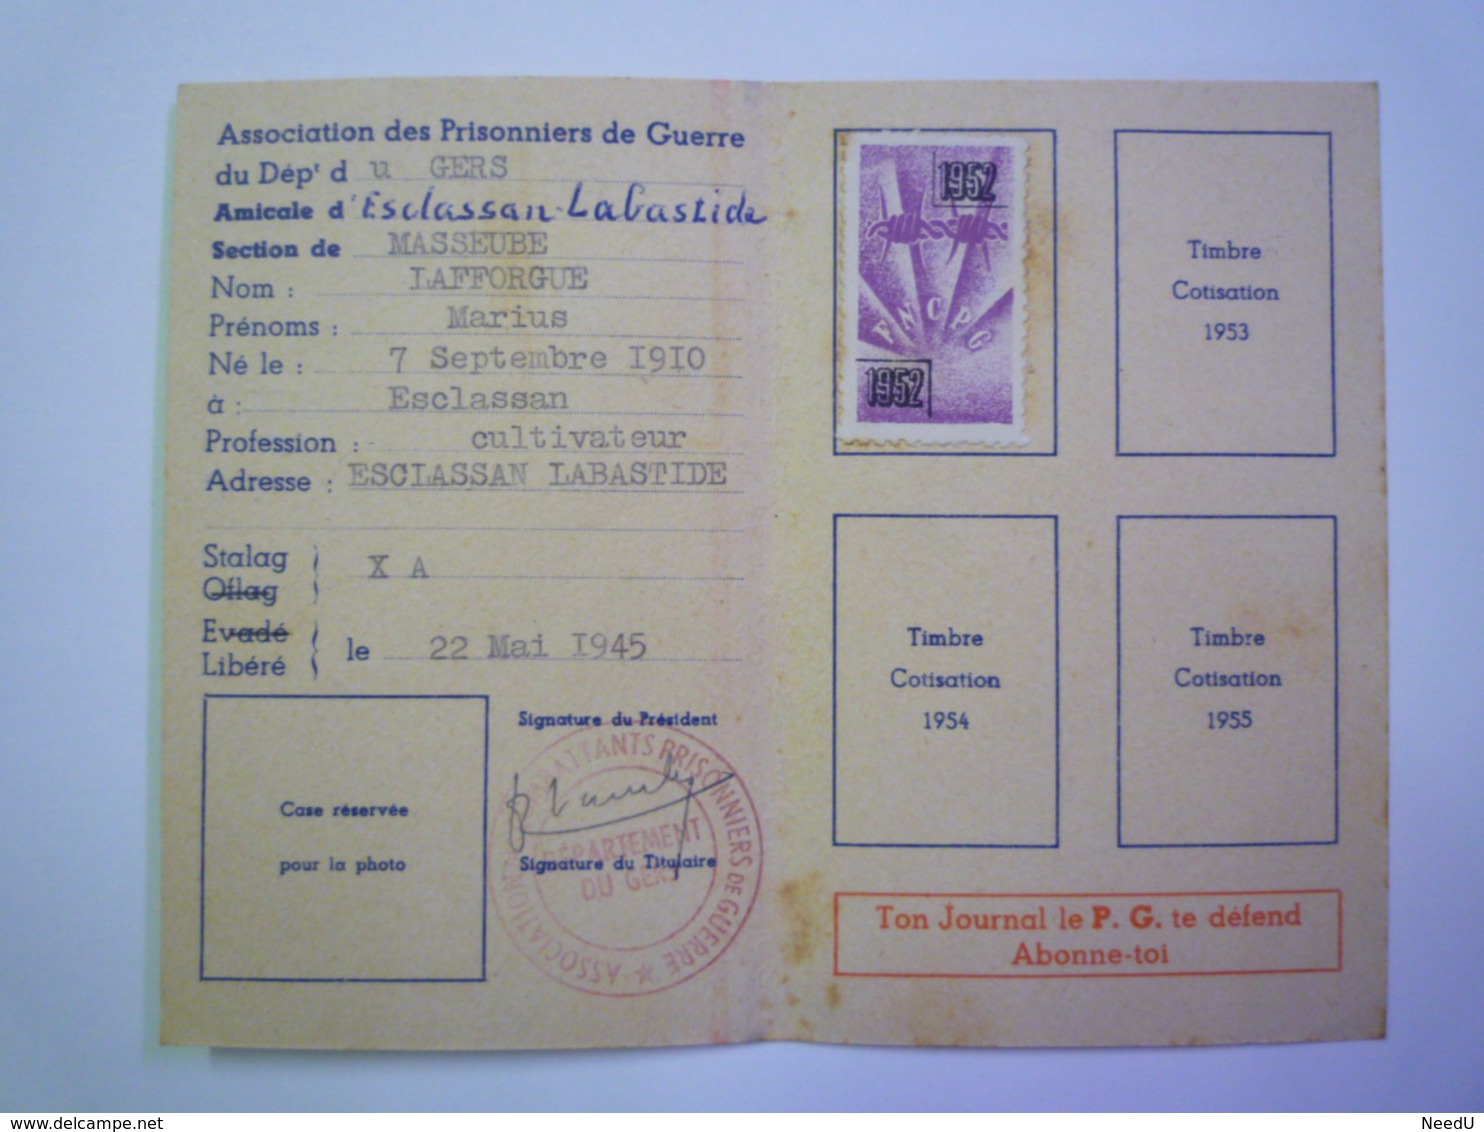 GP 2019 - 1705  Fédération Nationale Des Combattants Prisonniers De Guerre - Carte De Membre 1952  (Masseube - Gers)  XX - Non Classés